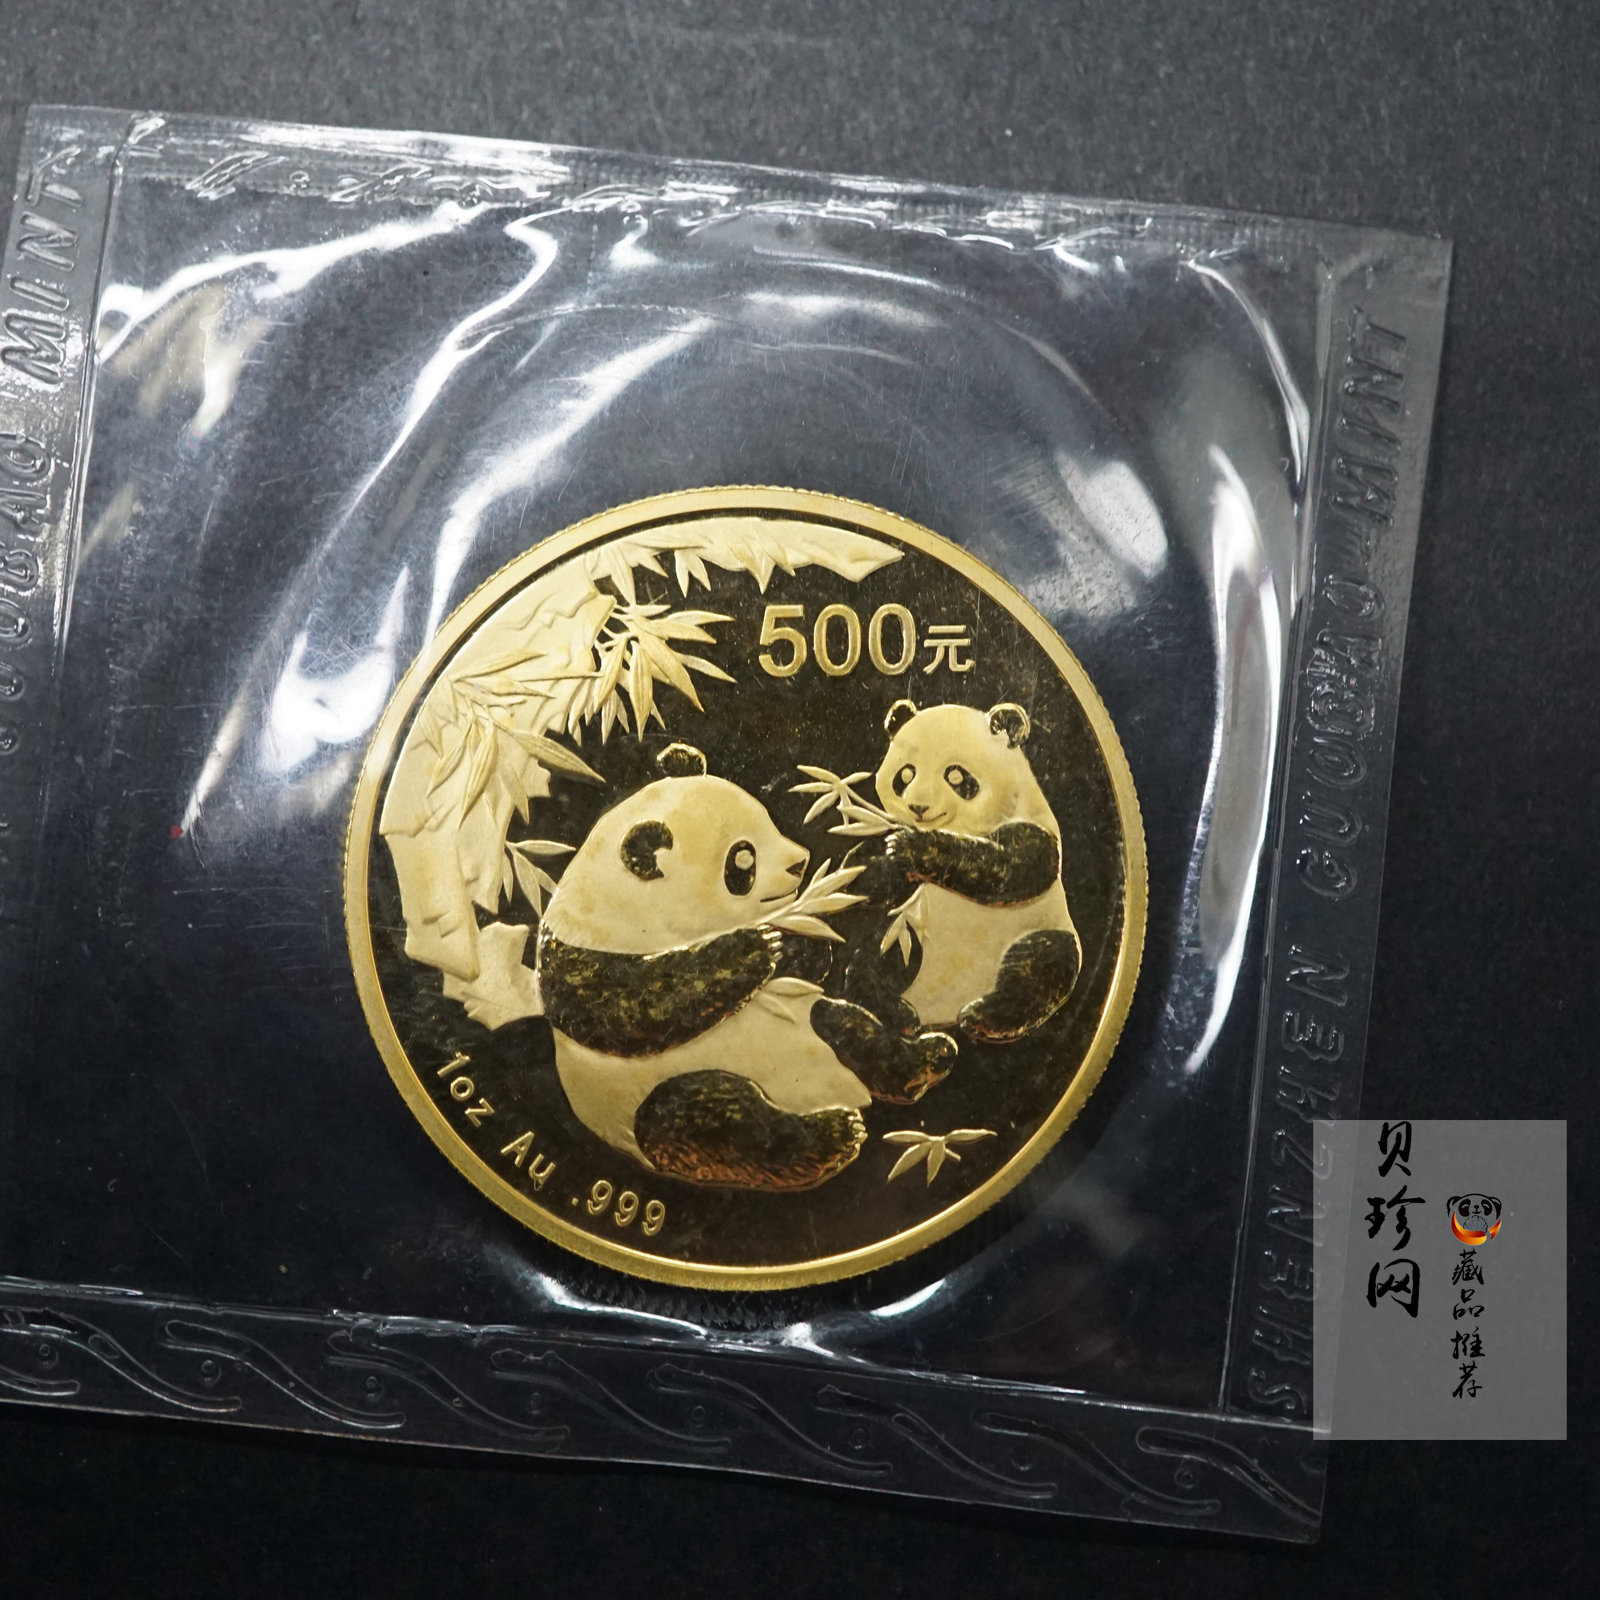 【060101】2006年熊猫1盎司普制金币